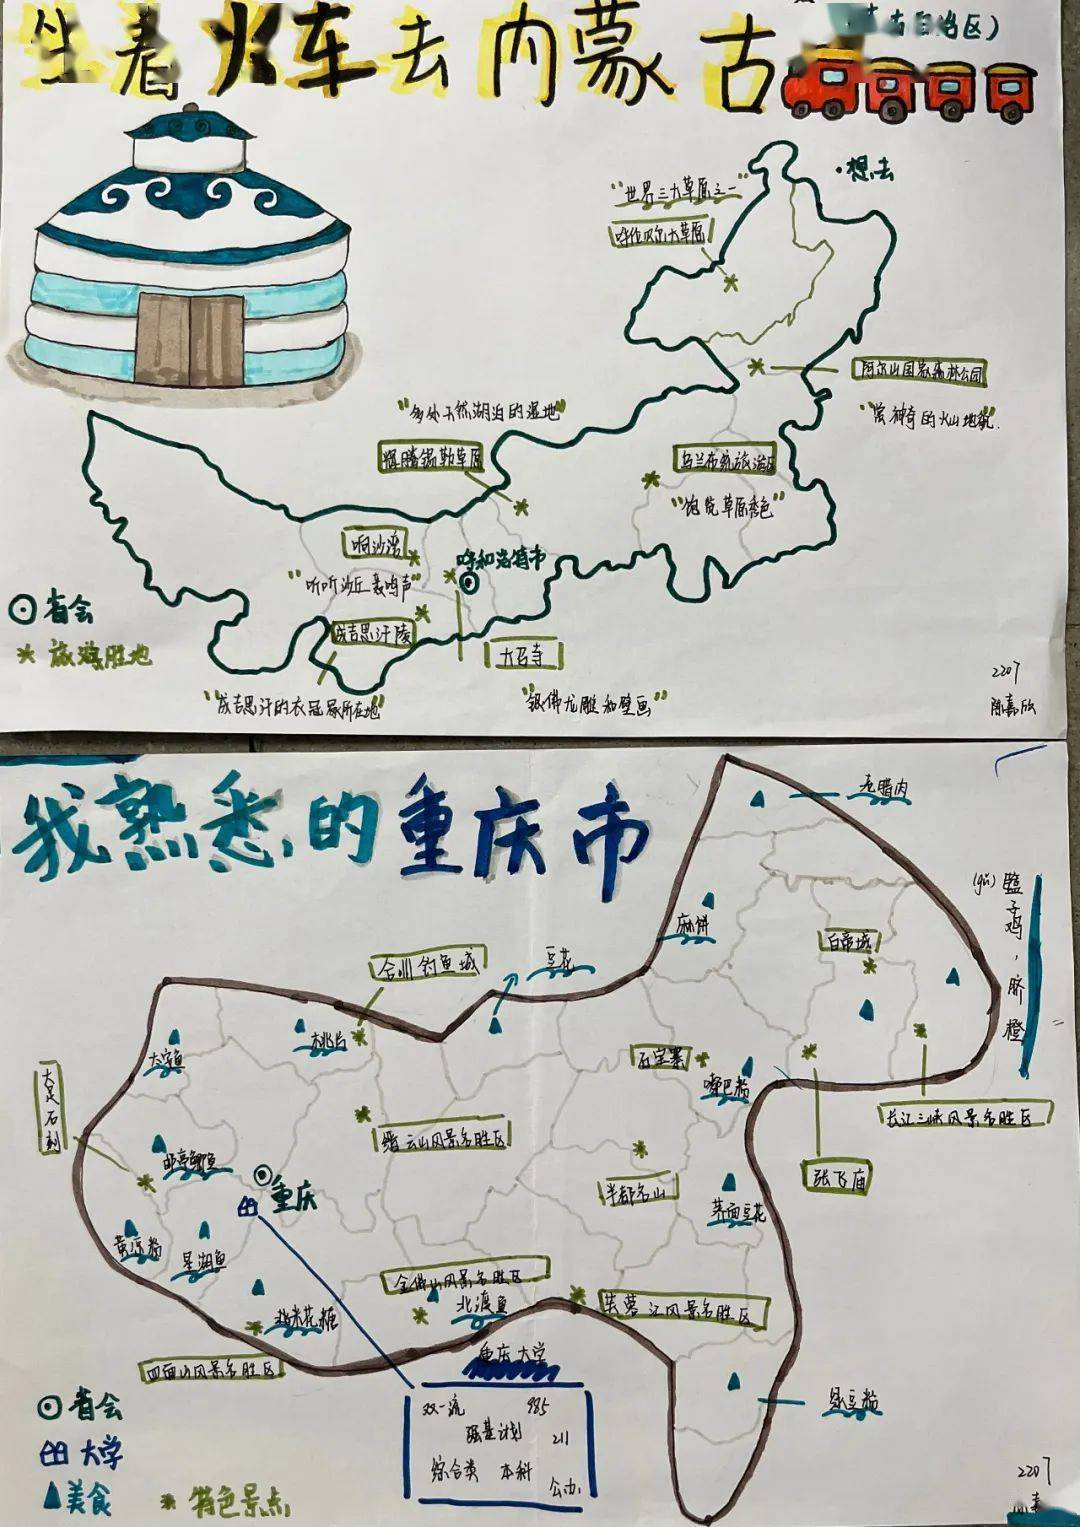 中国那么大,快跟着景弘学子的手绘地图去感受大美中国吧丨美好教育